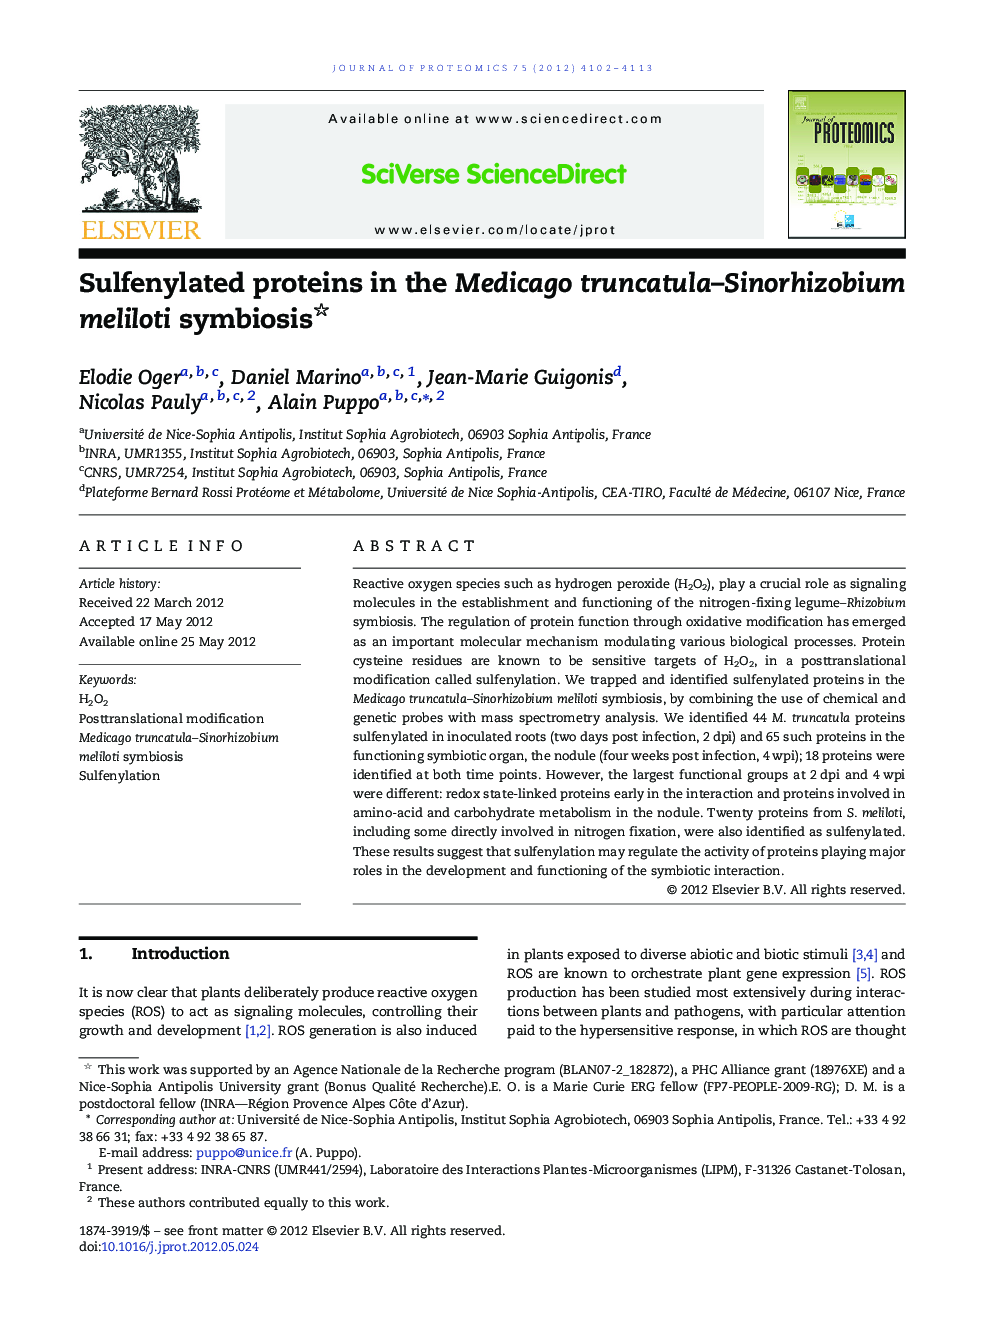 Sulfenylated proteins in the Medicago truncatula–Sinorhizobium meliloti symbiosis 